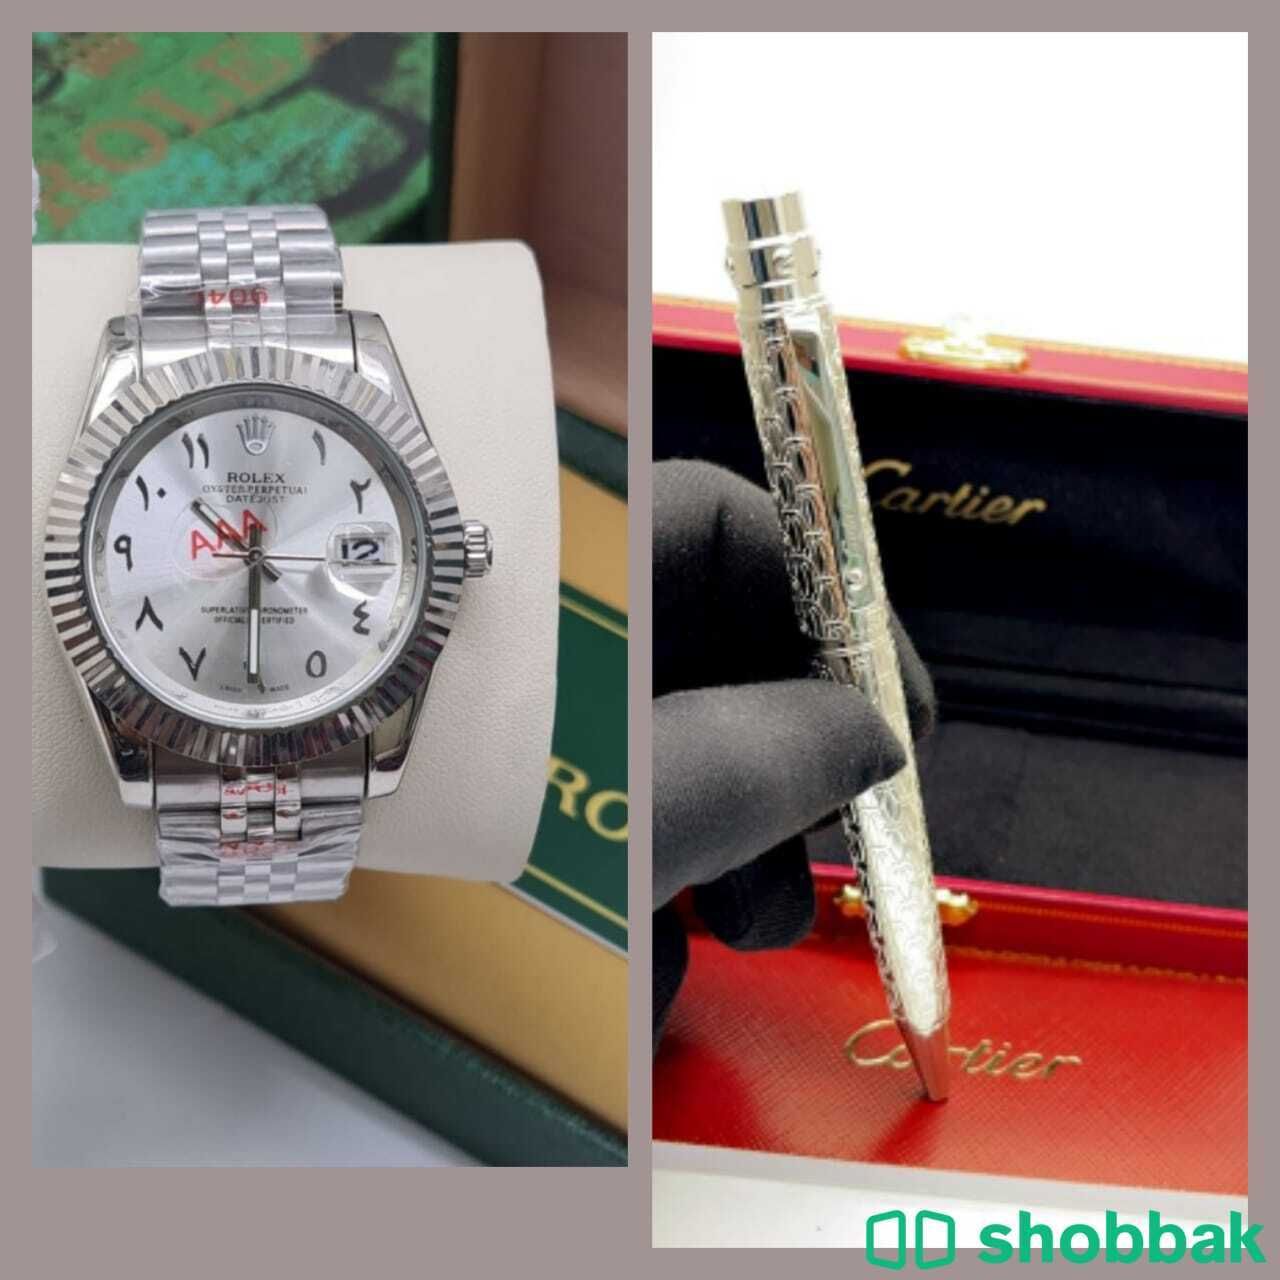 ساعة رولكس مع قلم كاريتر Shobbak Saudi Arabia